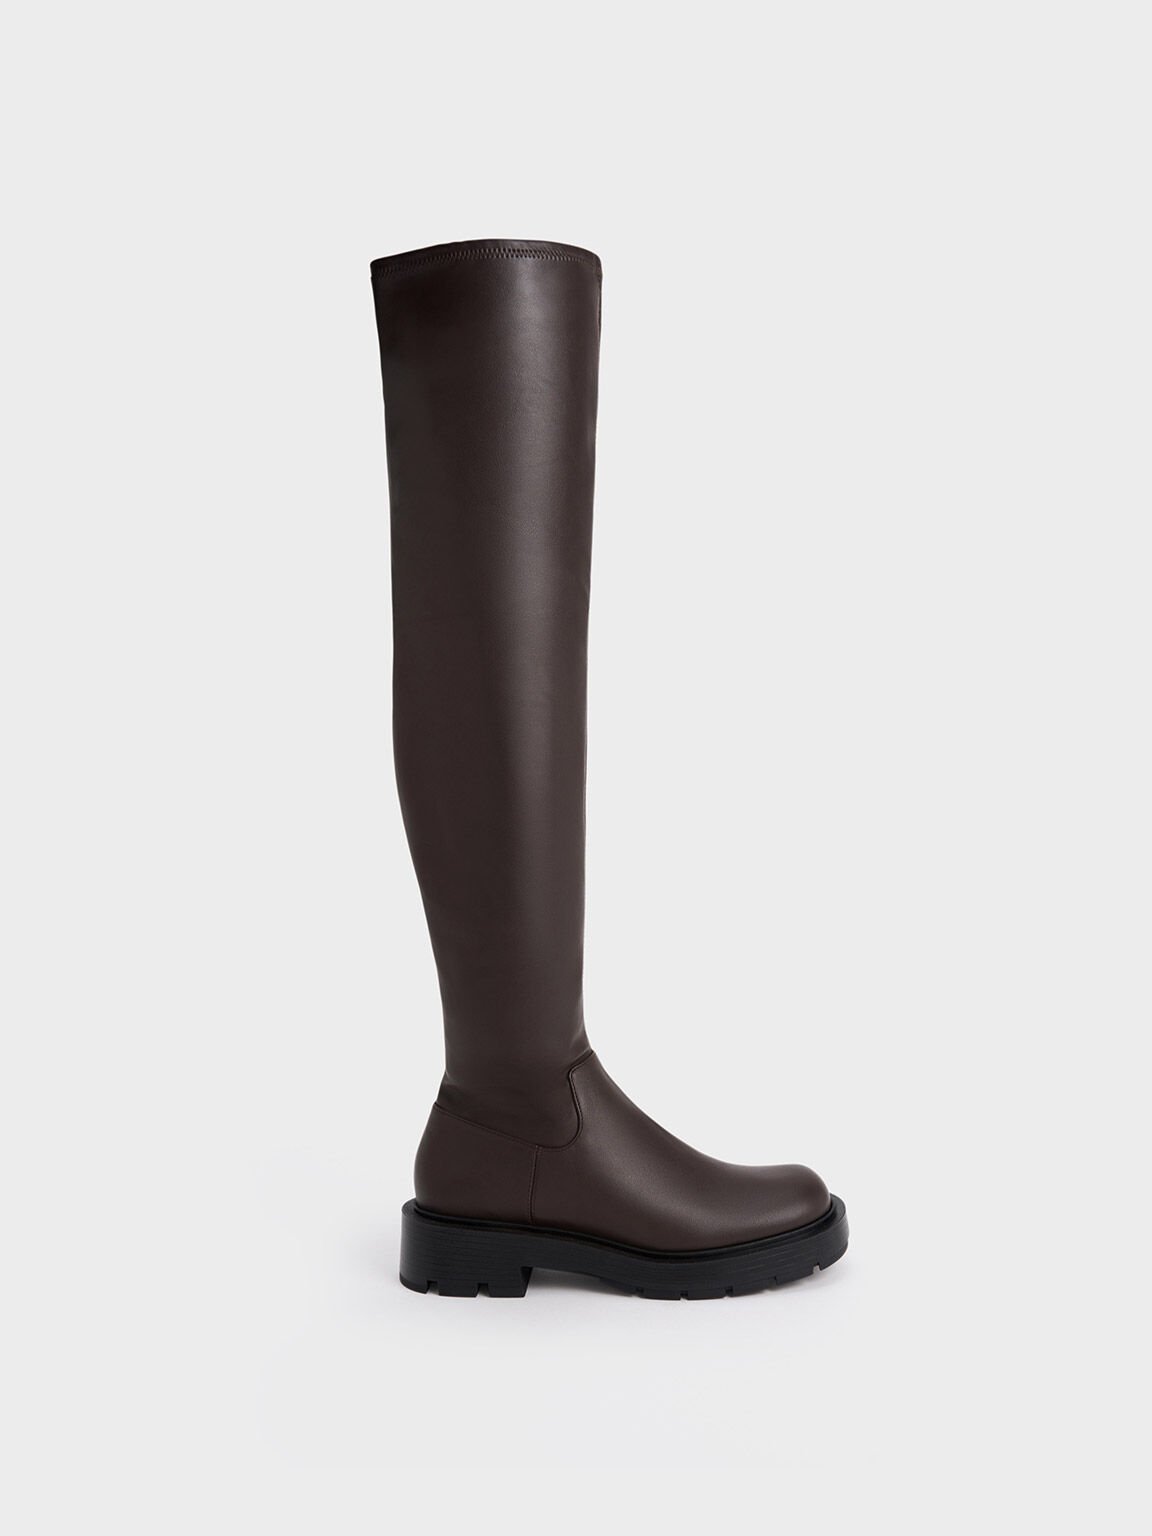 Dark Brown Platform Block Heel Ankle Boots - CHARLES & KEITH US